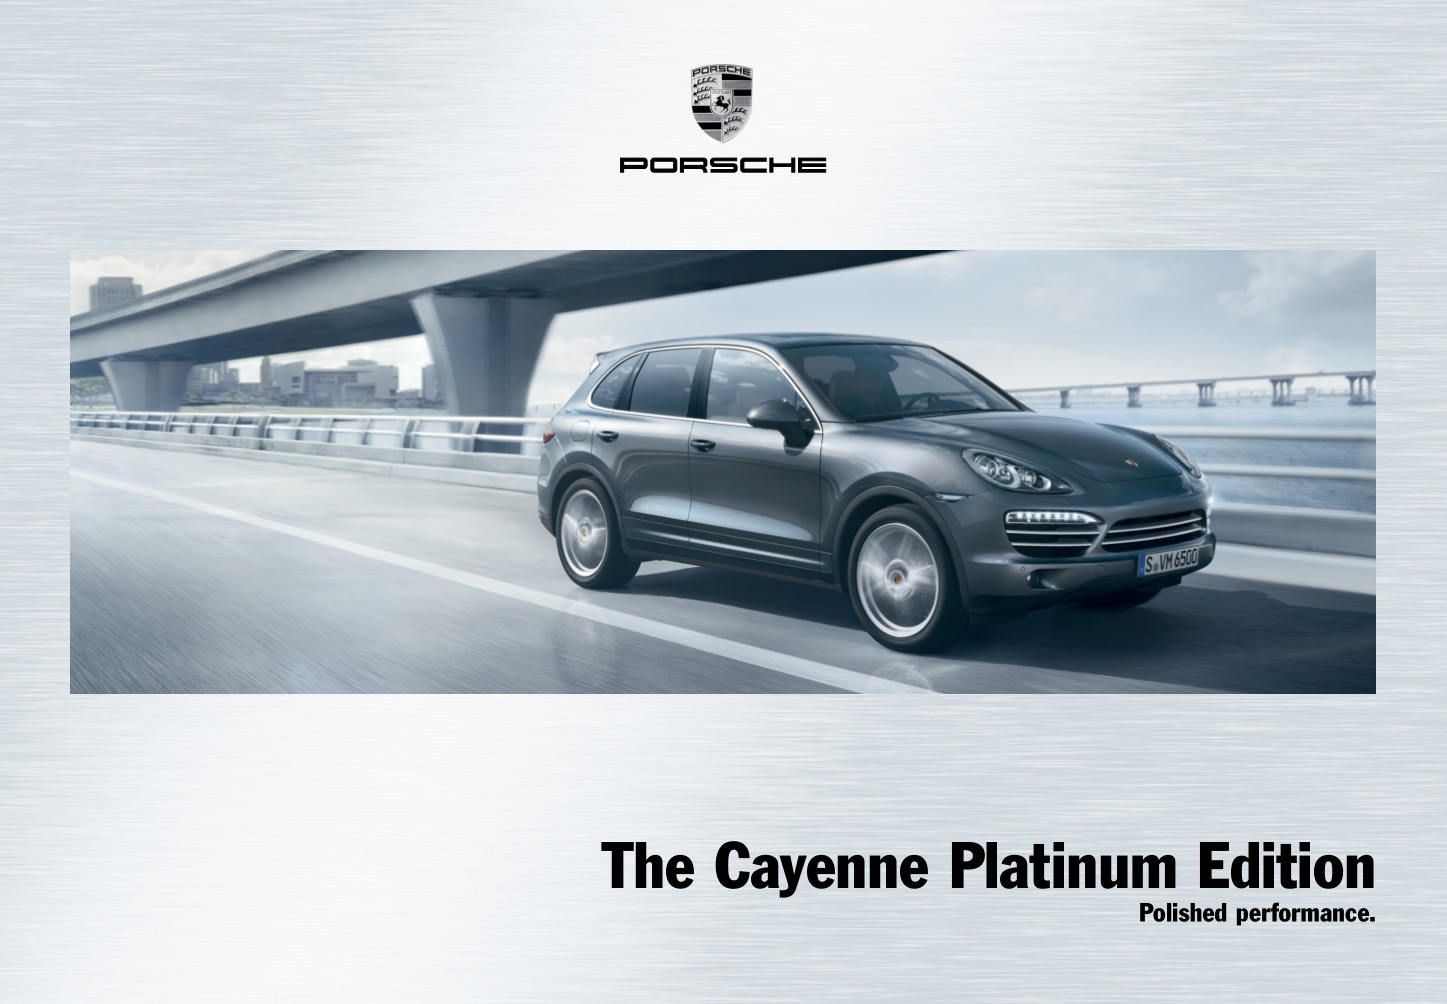 2014 Porsche Cayenne Platinum